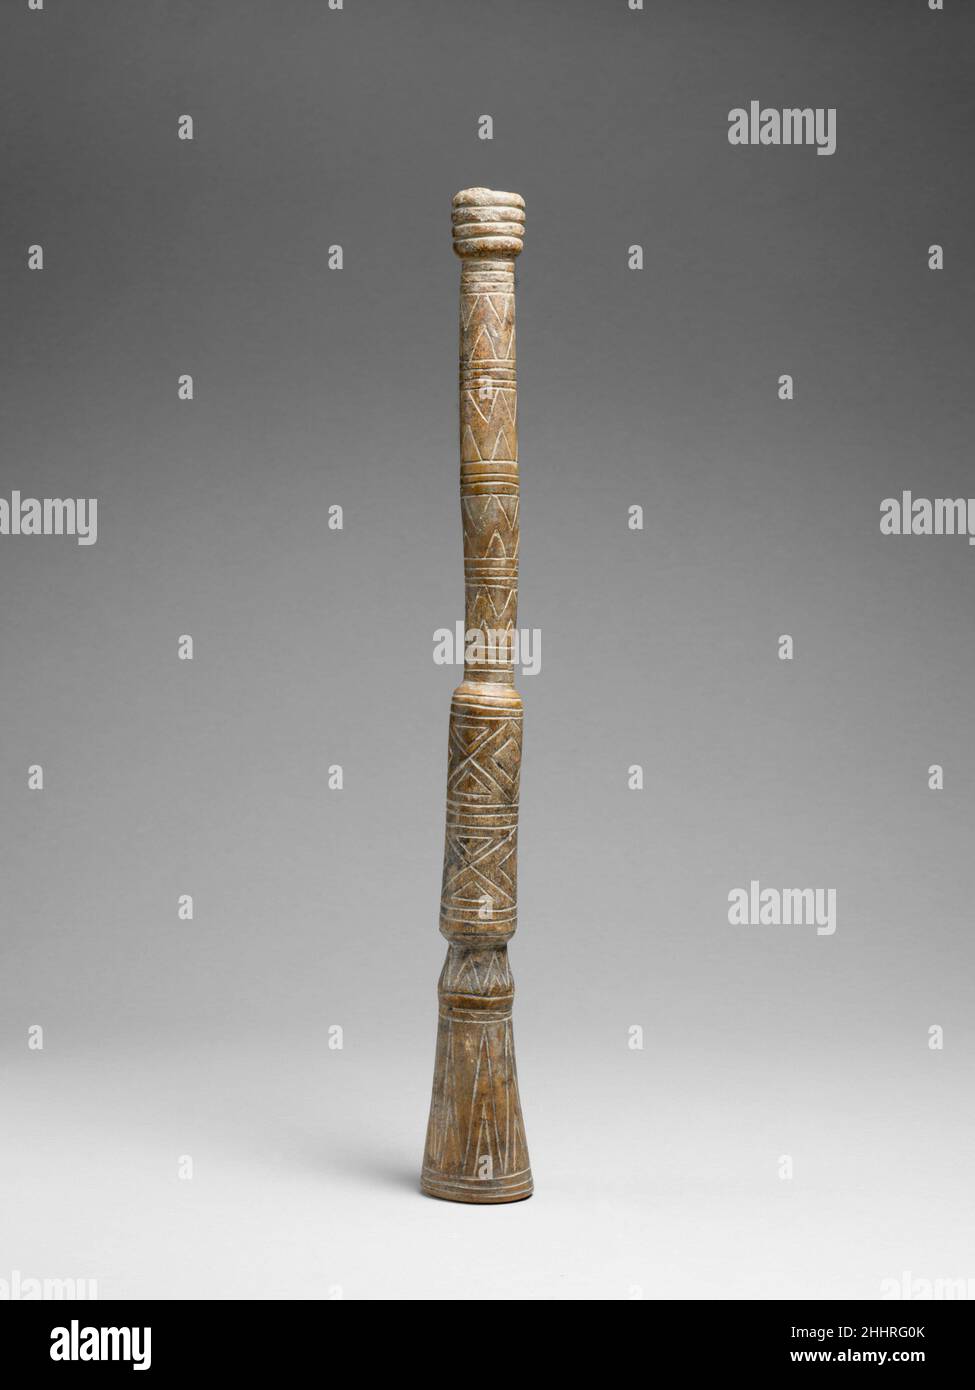 Knochentrompet 2nd–5th Century Calima, Malagana vor der keramischen Produktion wurde Knochen für kleine Trompeten, Flöten und Panflöten verwendet. Diese Kondor-Knochen-Trompete war wahrscheinlich einmal mit Gold bedeckt, so dass die eingeschnittene Oberfläche durch das Goldblatt zeigen konnte. Dieses seltene Exemplar wurde in Abschnitten angefertigt und möglicherweise an größeren Kürbistrompeten modelliert. Knochentrumpel. Calima, Malagana. 2nd–5th Jahrhundert. Kondorknochen. Yotoco-Zeit (präkolumbianisch). Calima, Kolumbien. Aerophon-Lip Vibrated-Trompete / Posaune Stockfoto